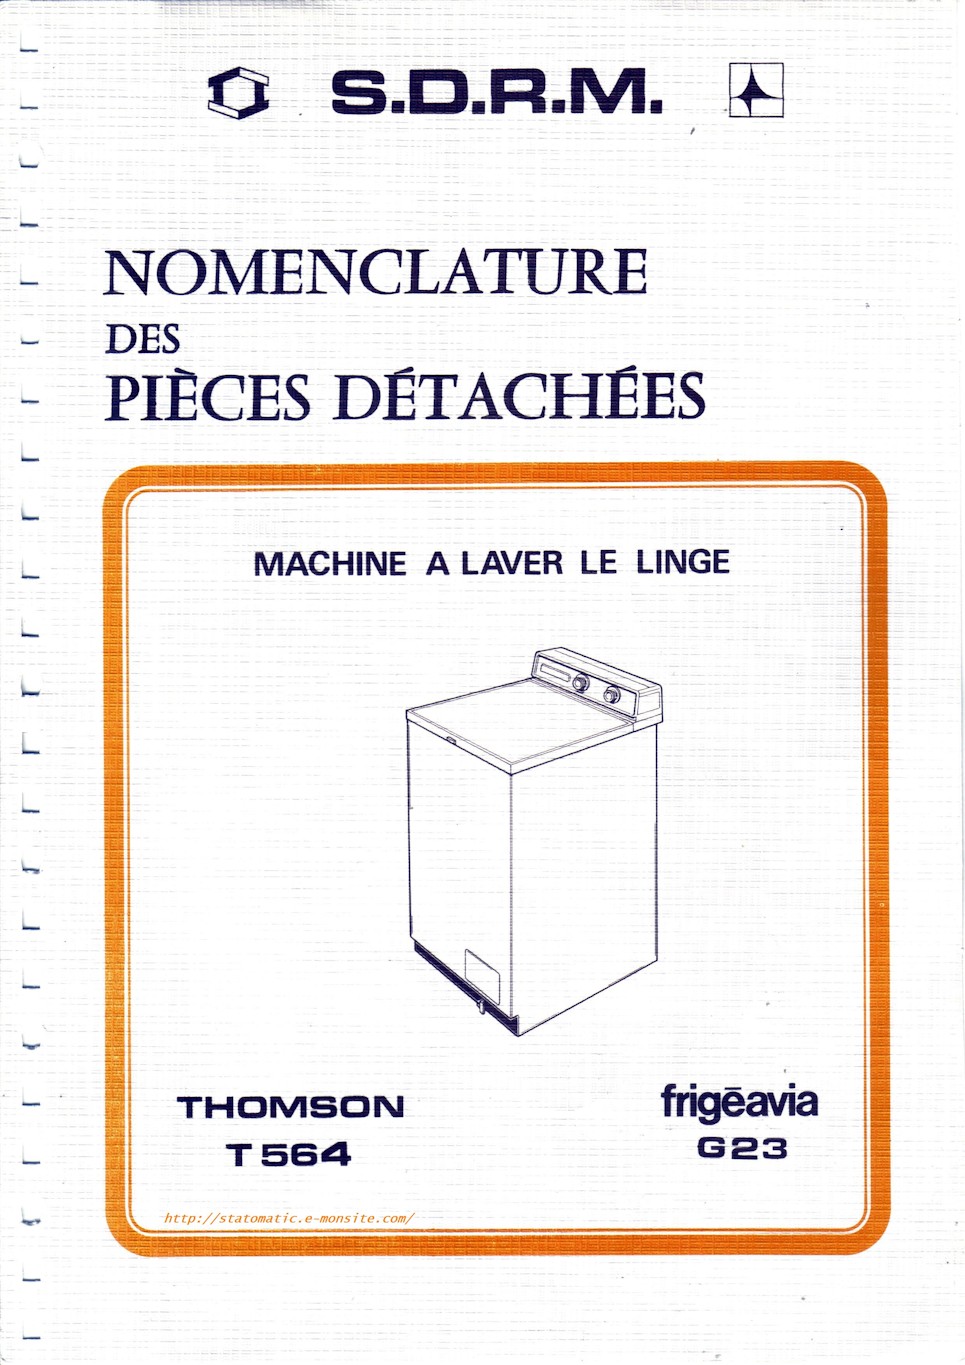 Thomson T564 et Frigéavia G23